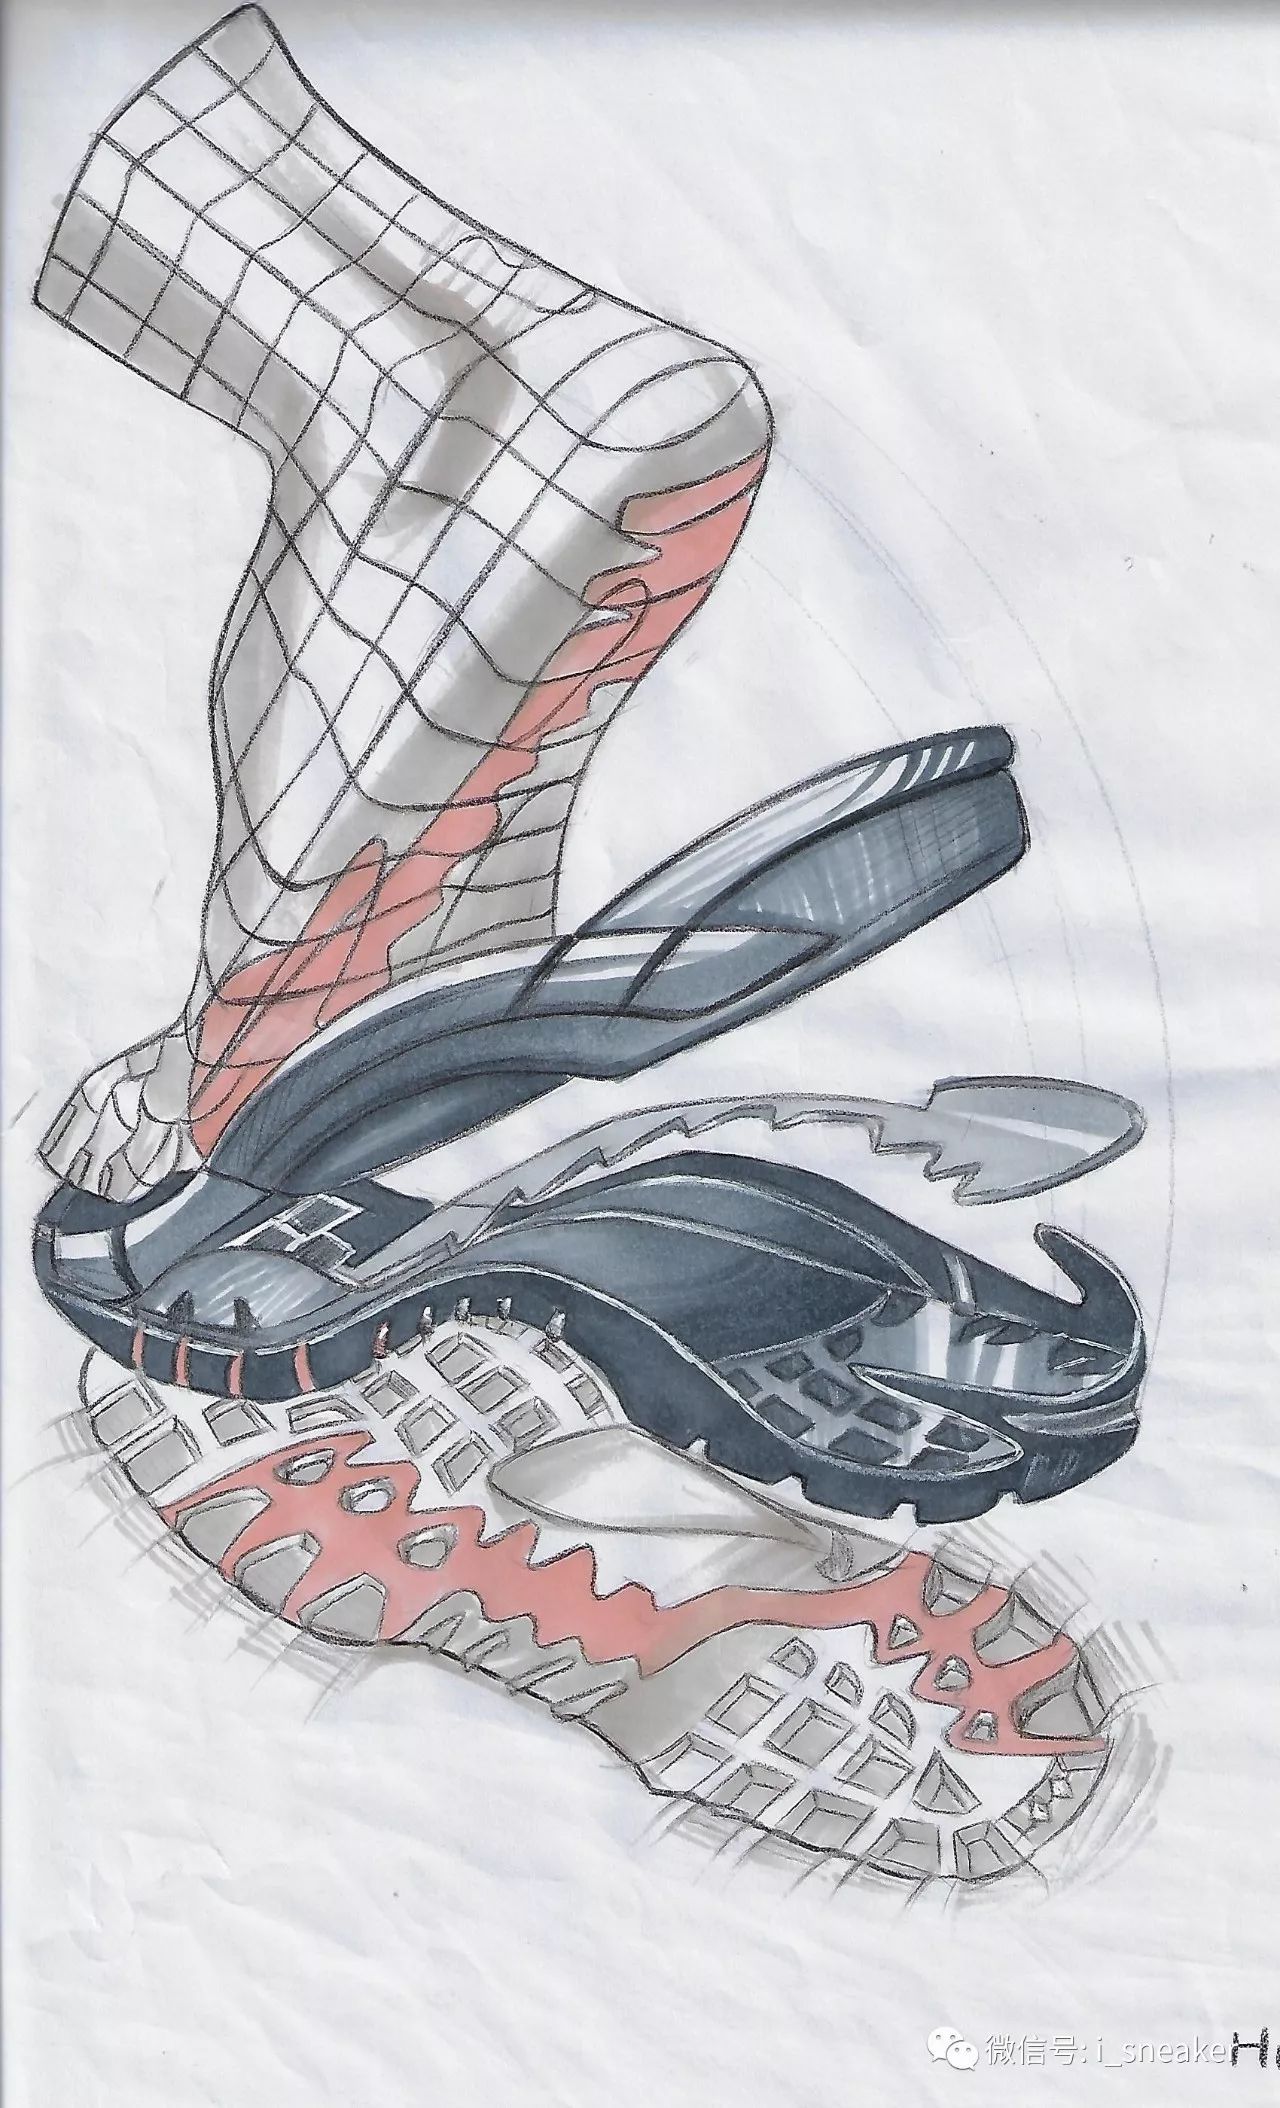 来稿丨泉州轻工学院16级鞋类设计与工艺专业学生黄雨晴马克笔手绘